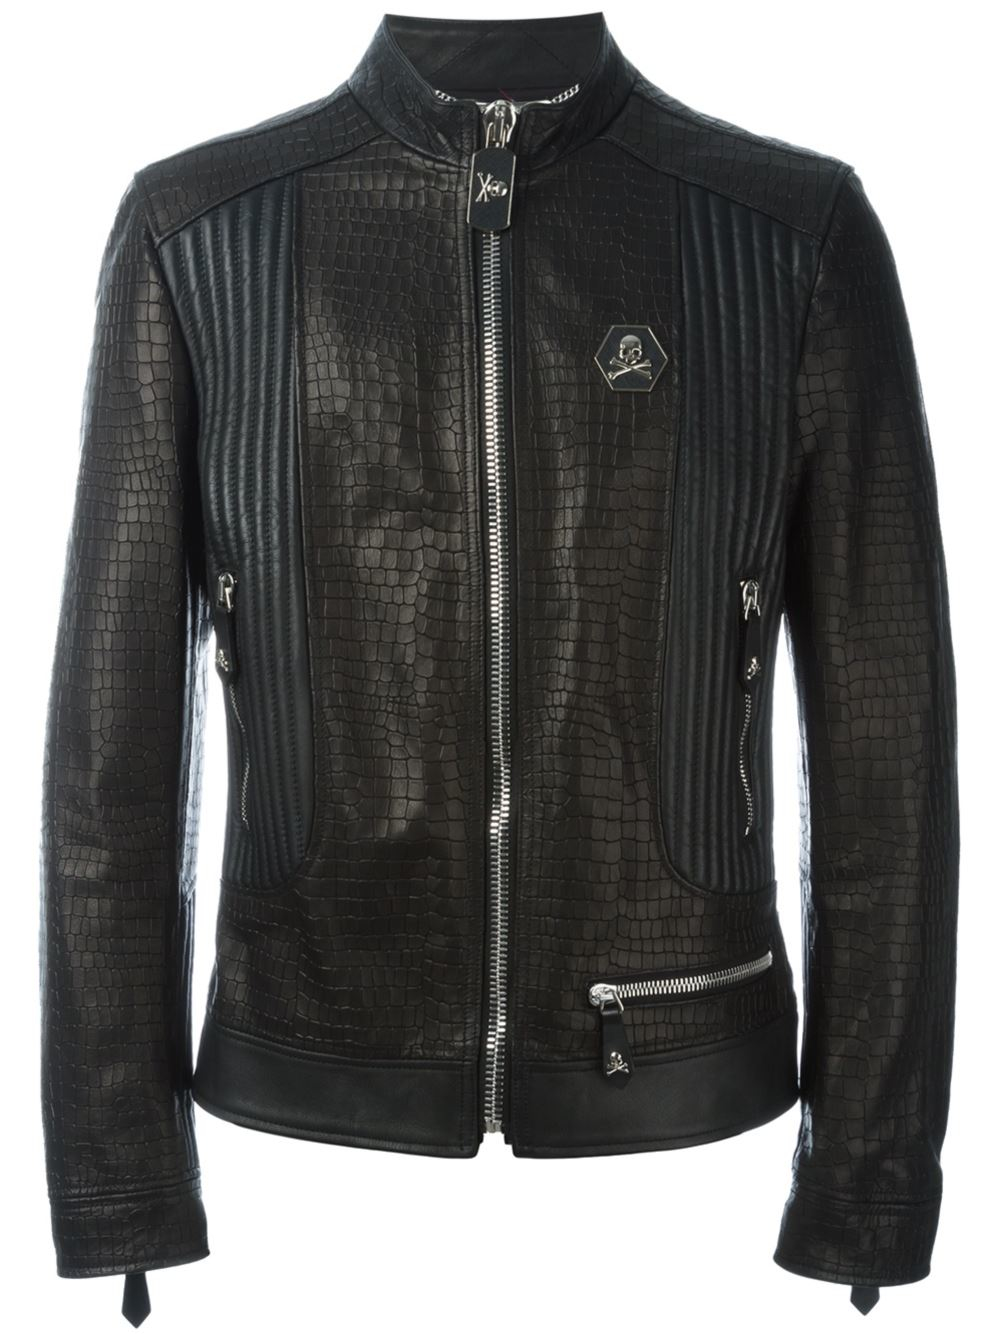 Philipp Plein Leather 'grunge' Jacket in Black for Men - Lyst